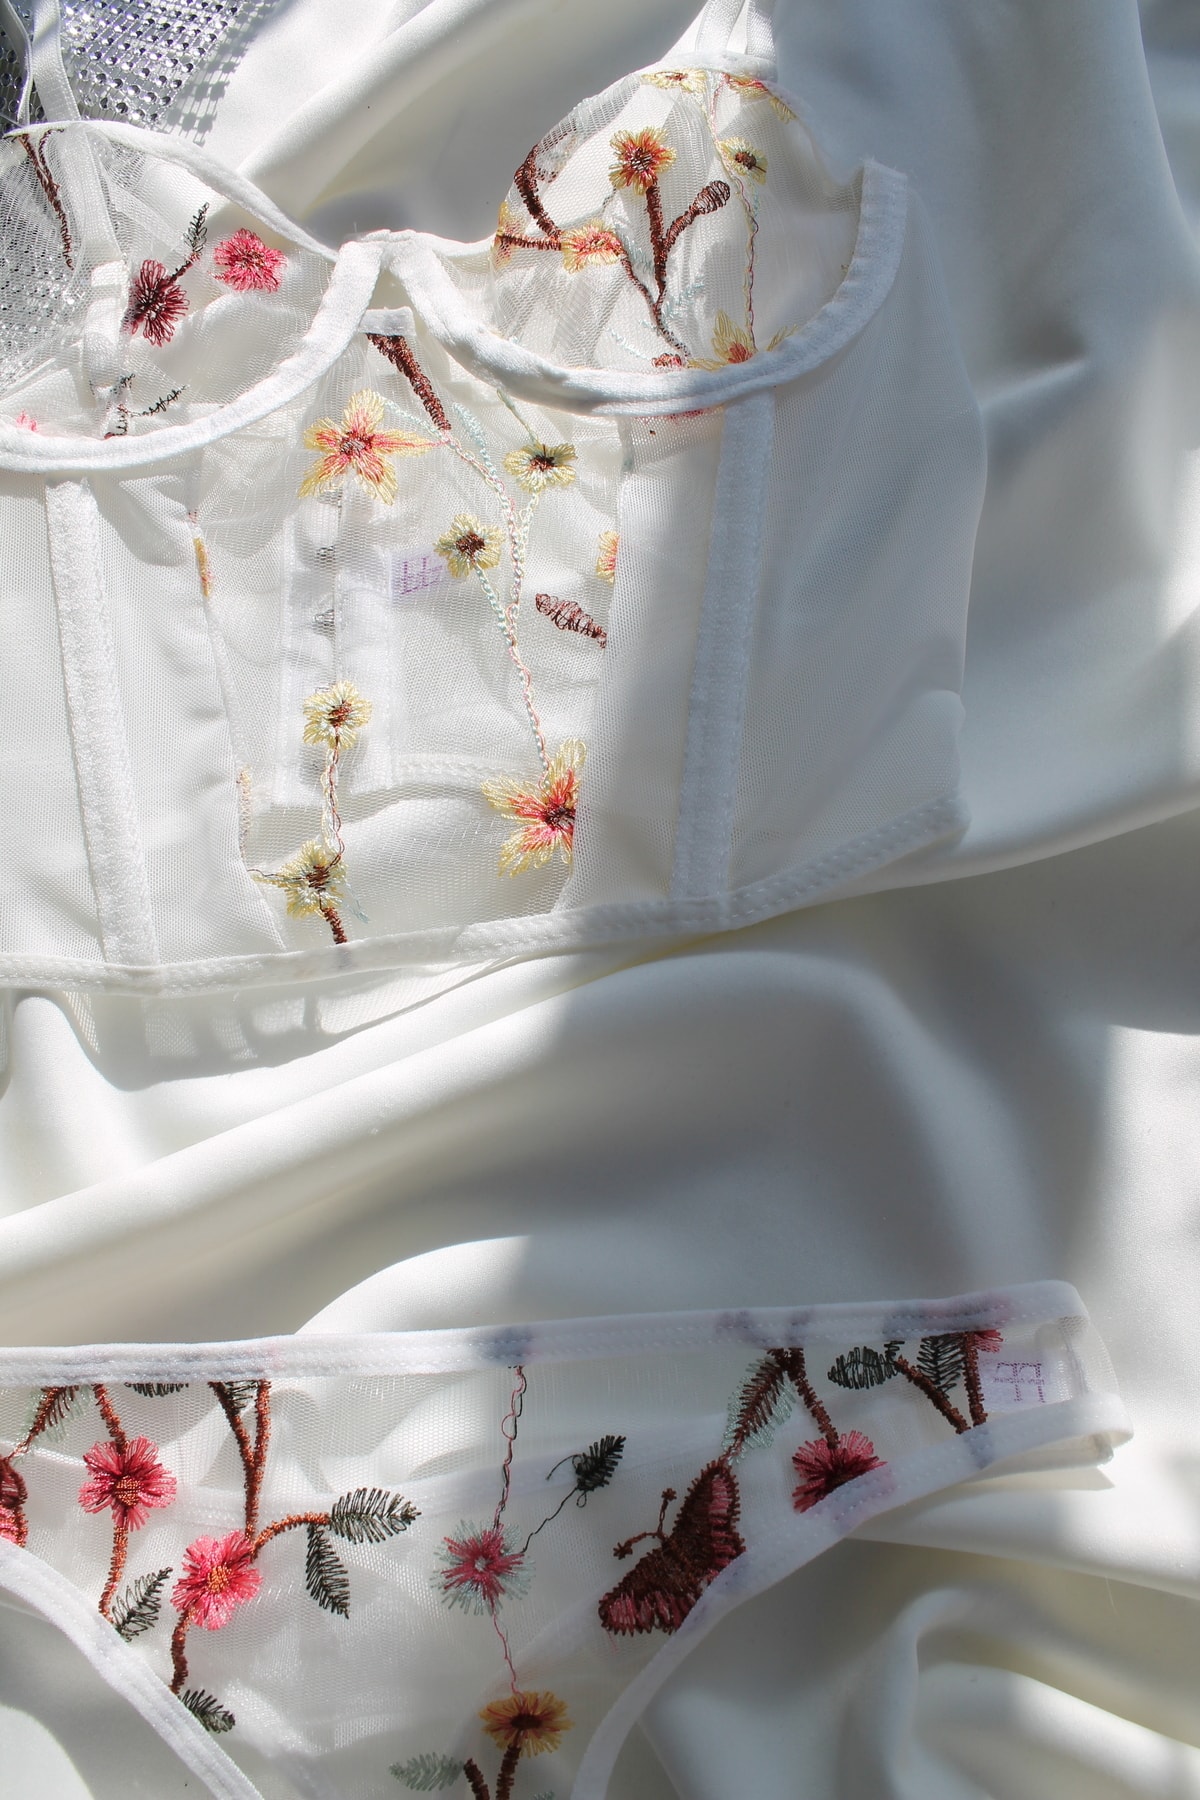 More&amp;More Underwear Beyaz Krem Çiçek Desenli Tül Korse Büstiyer Bralet Takım PH11256